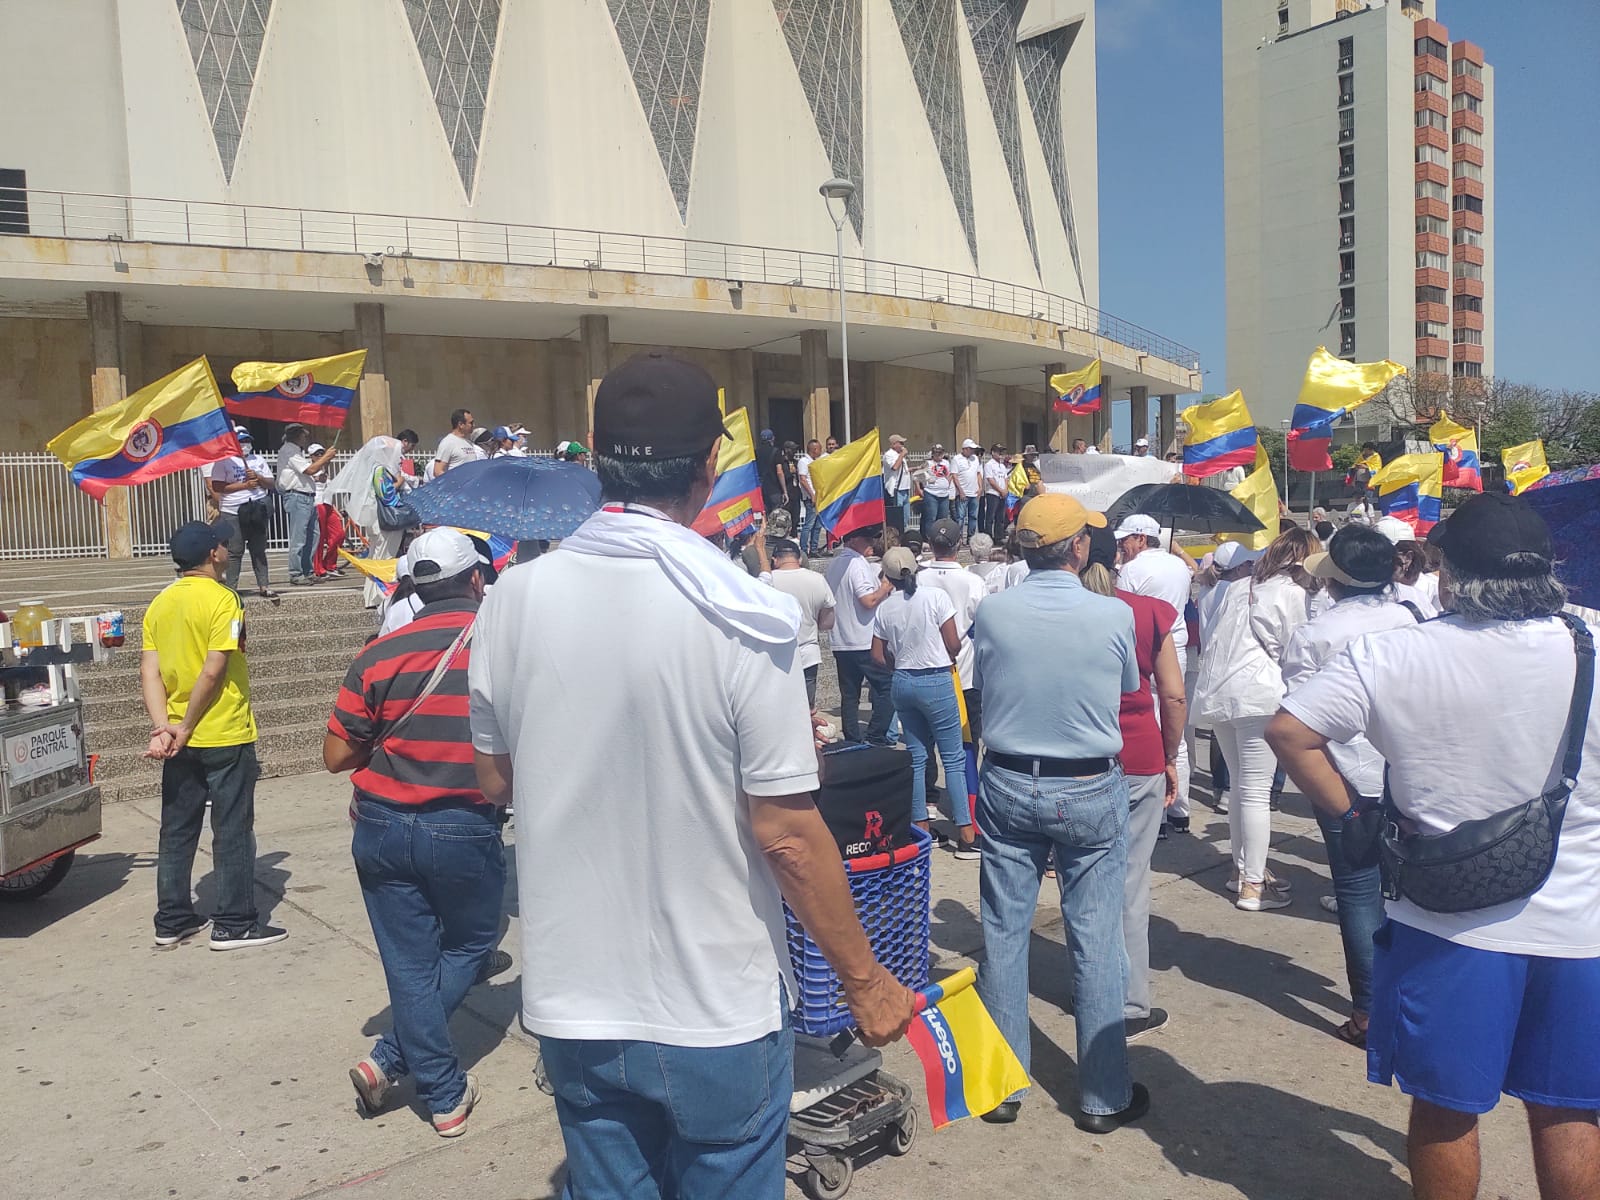 Concentración de opositores en la Plaza de la Paz.